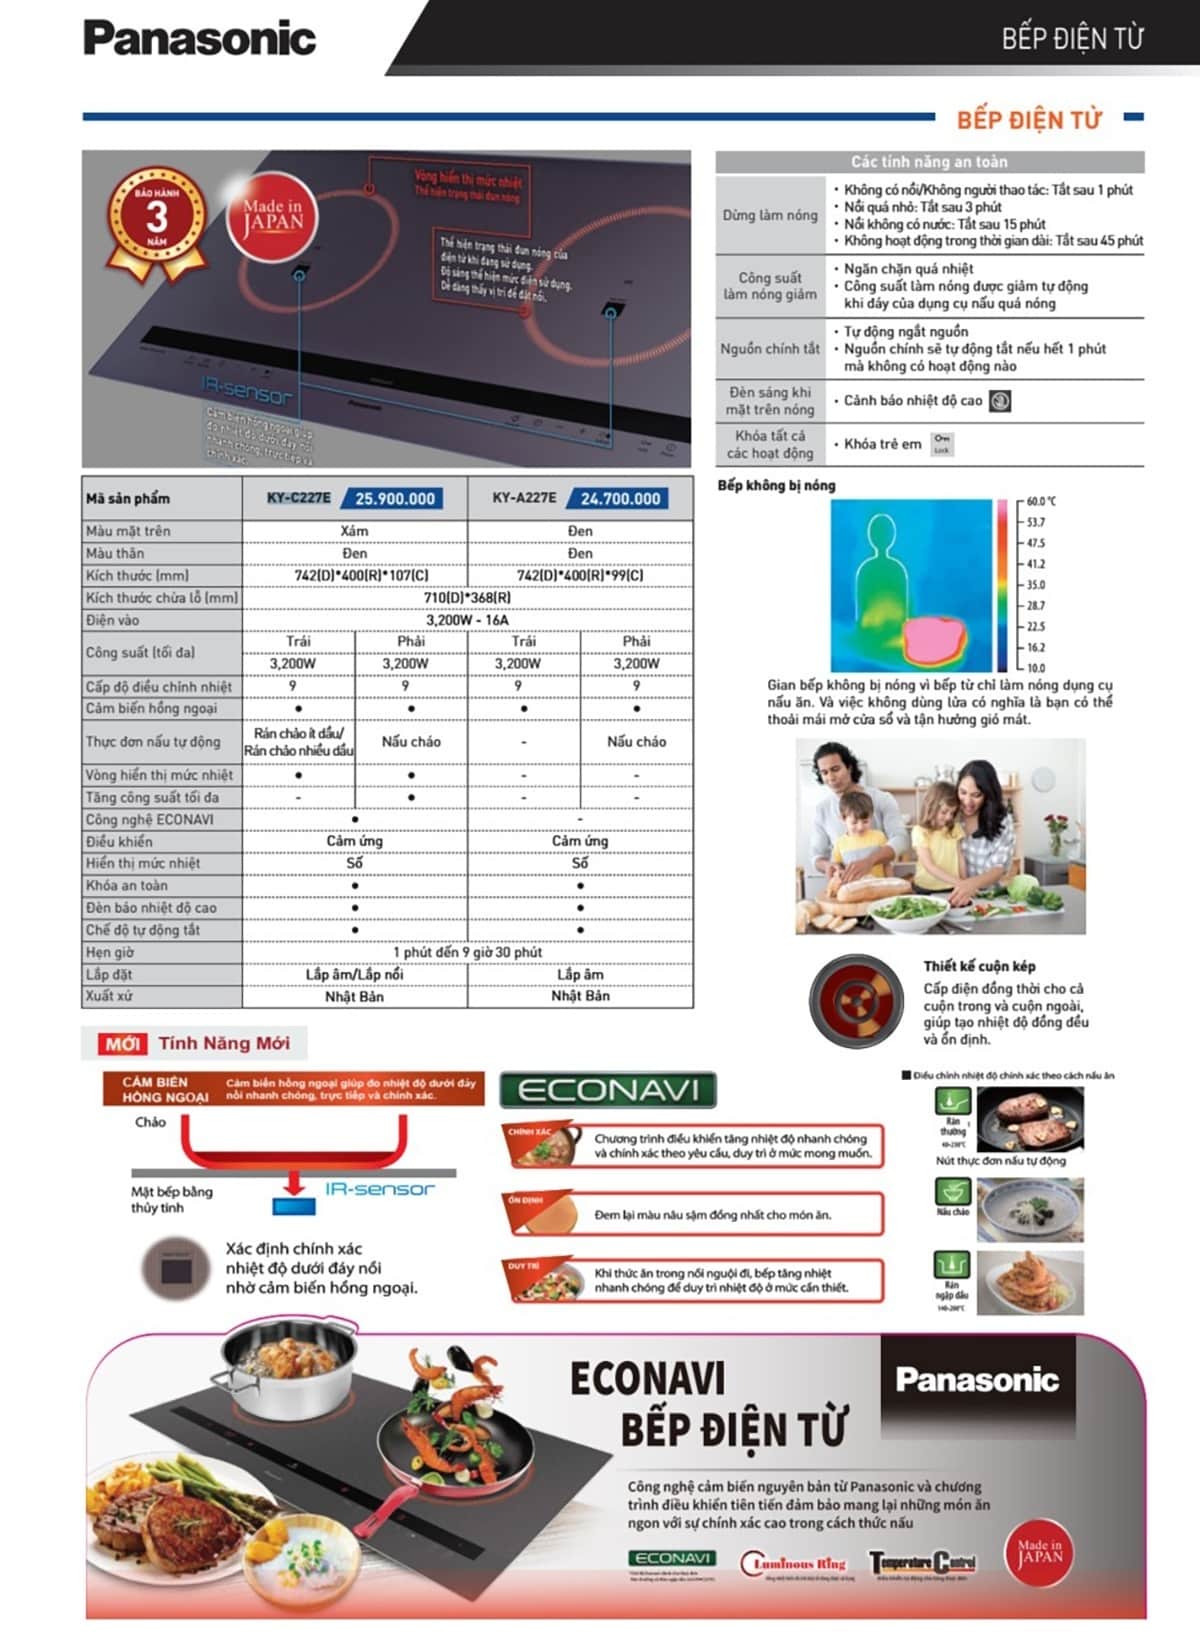 Bảng giá bếp điện từ Panasonic mới nhất